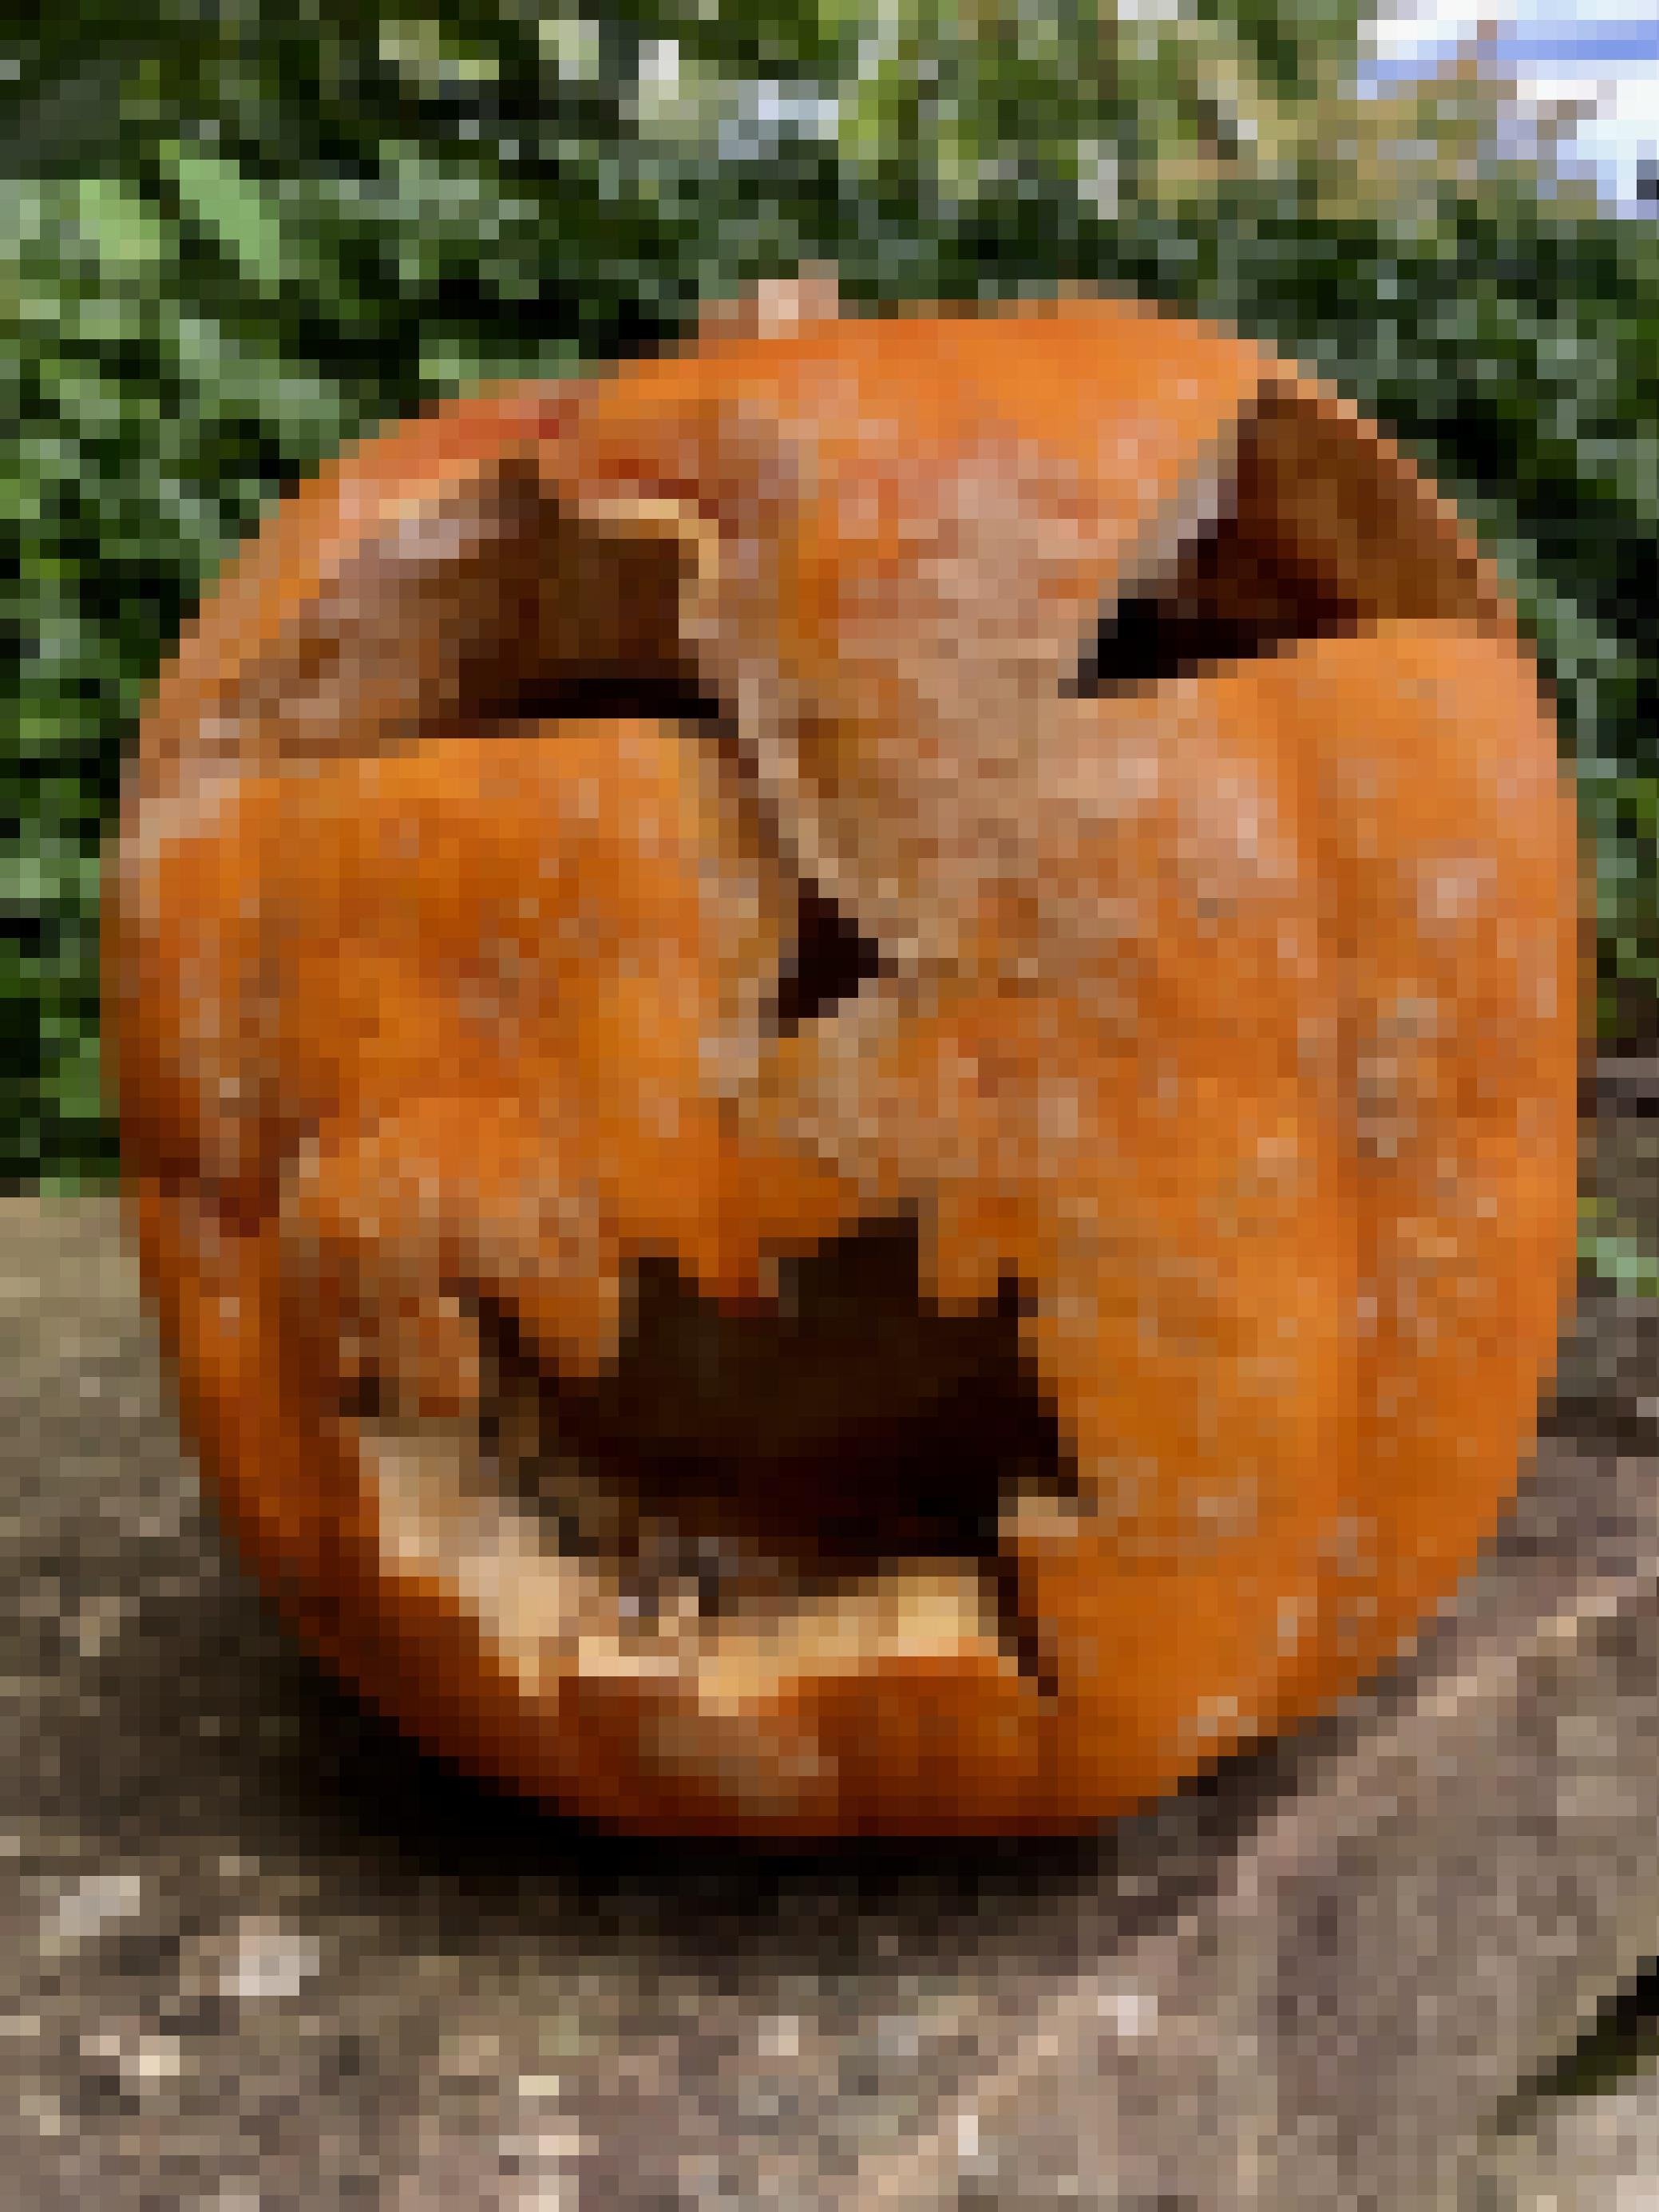 Ein für Halloween geschnitzter Kürbis mit gruseligem Gesicht hat angefangen zu faulen und ist schimmlig.